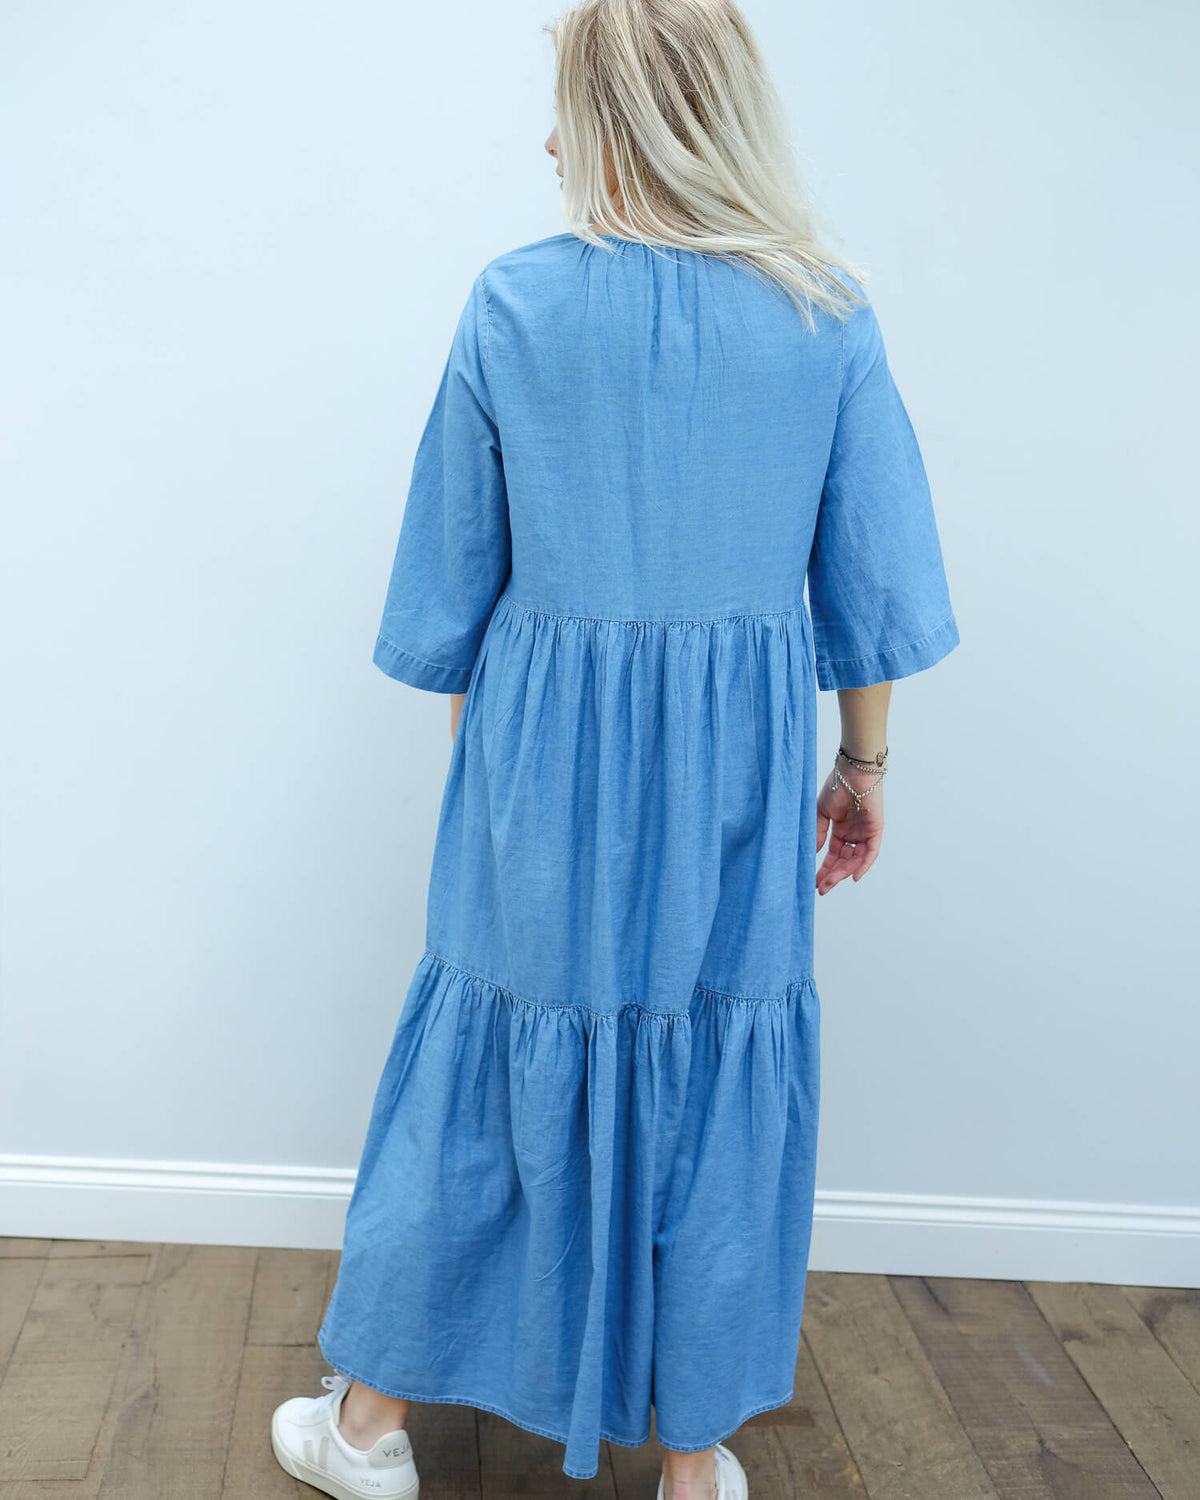 SLF Joy ankle dress in blue